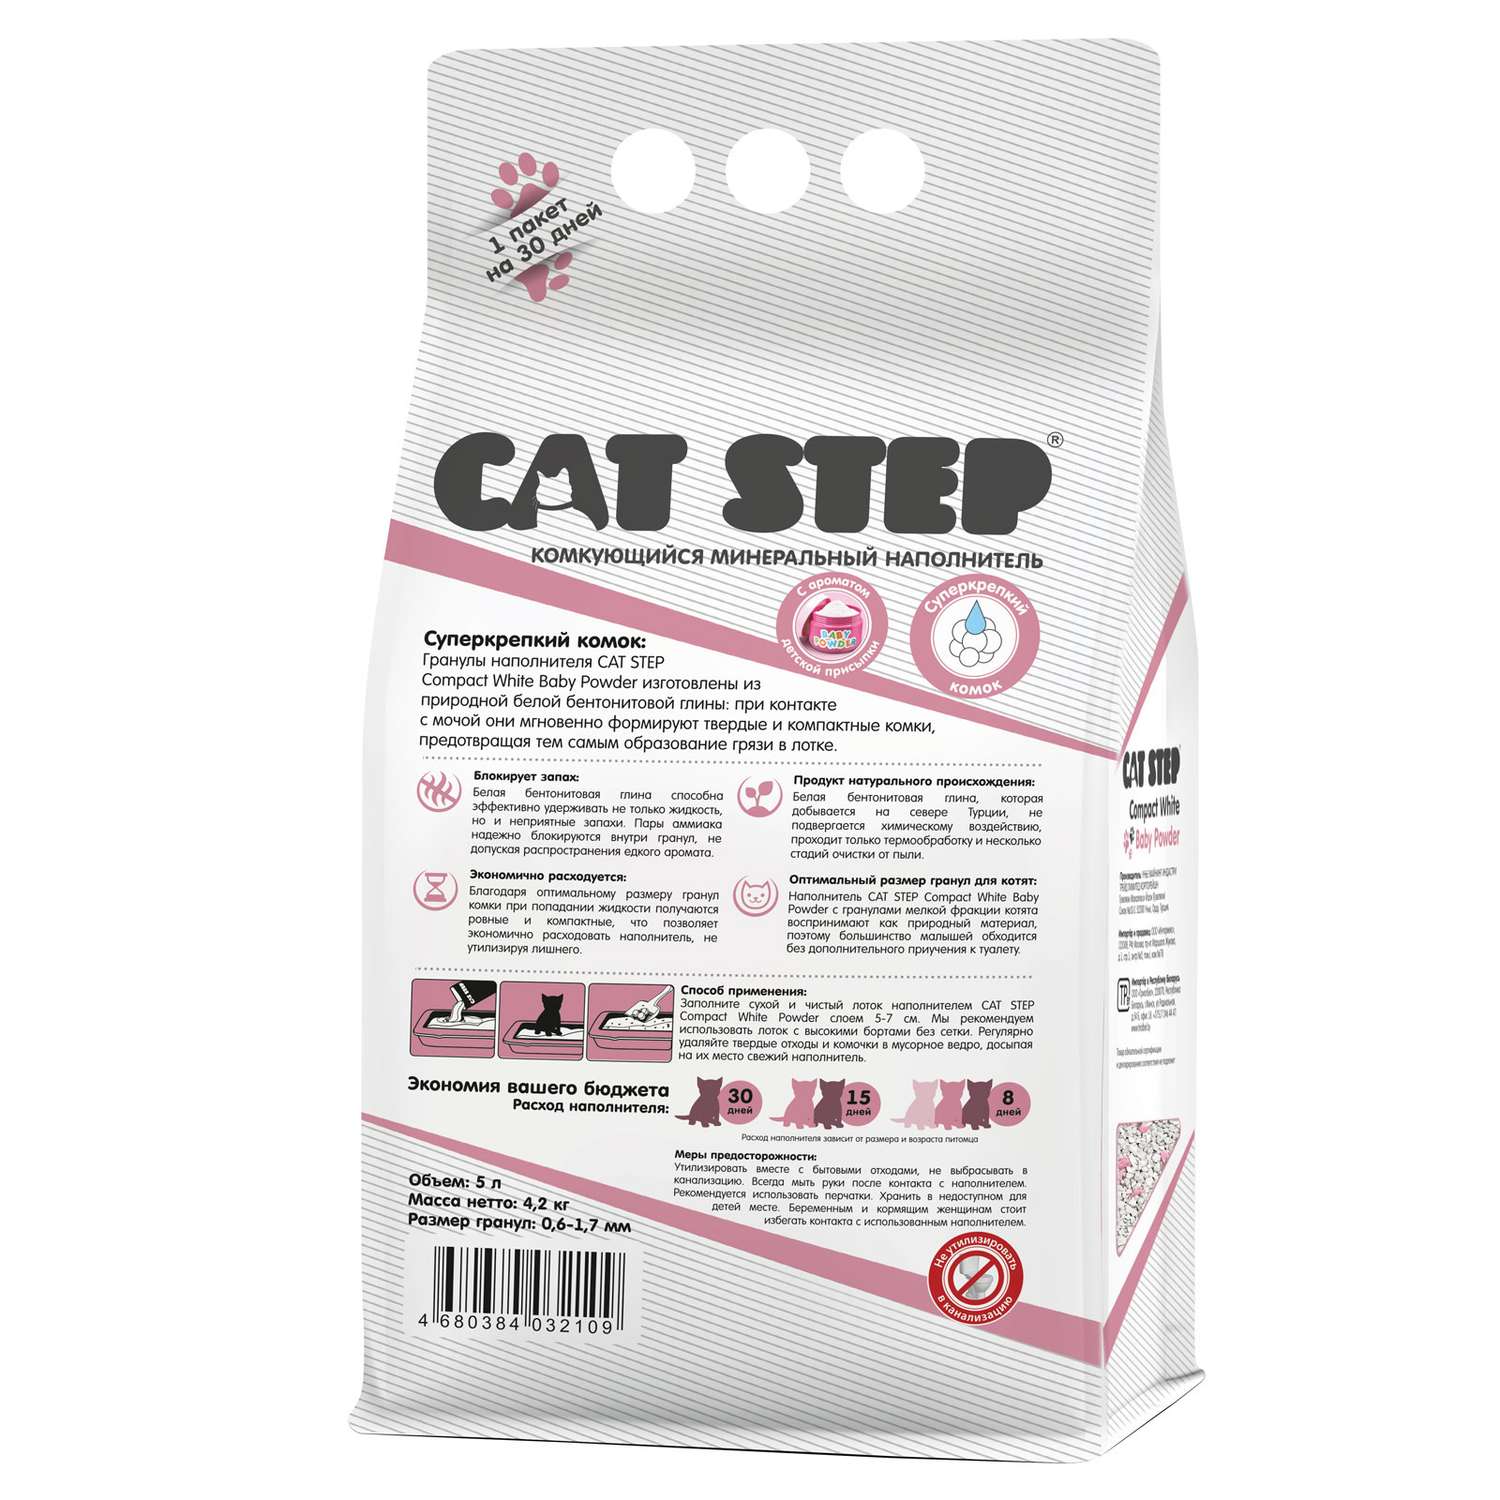 Наполнитель для котят Cat Step Compact White Baby Powder комкующийся минеральный 5л - фото 2